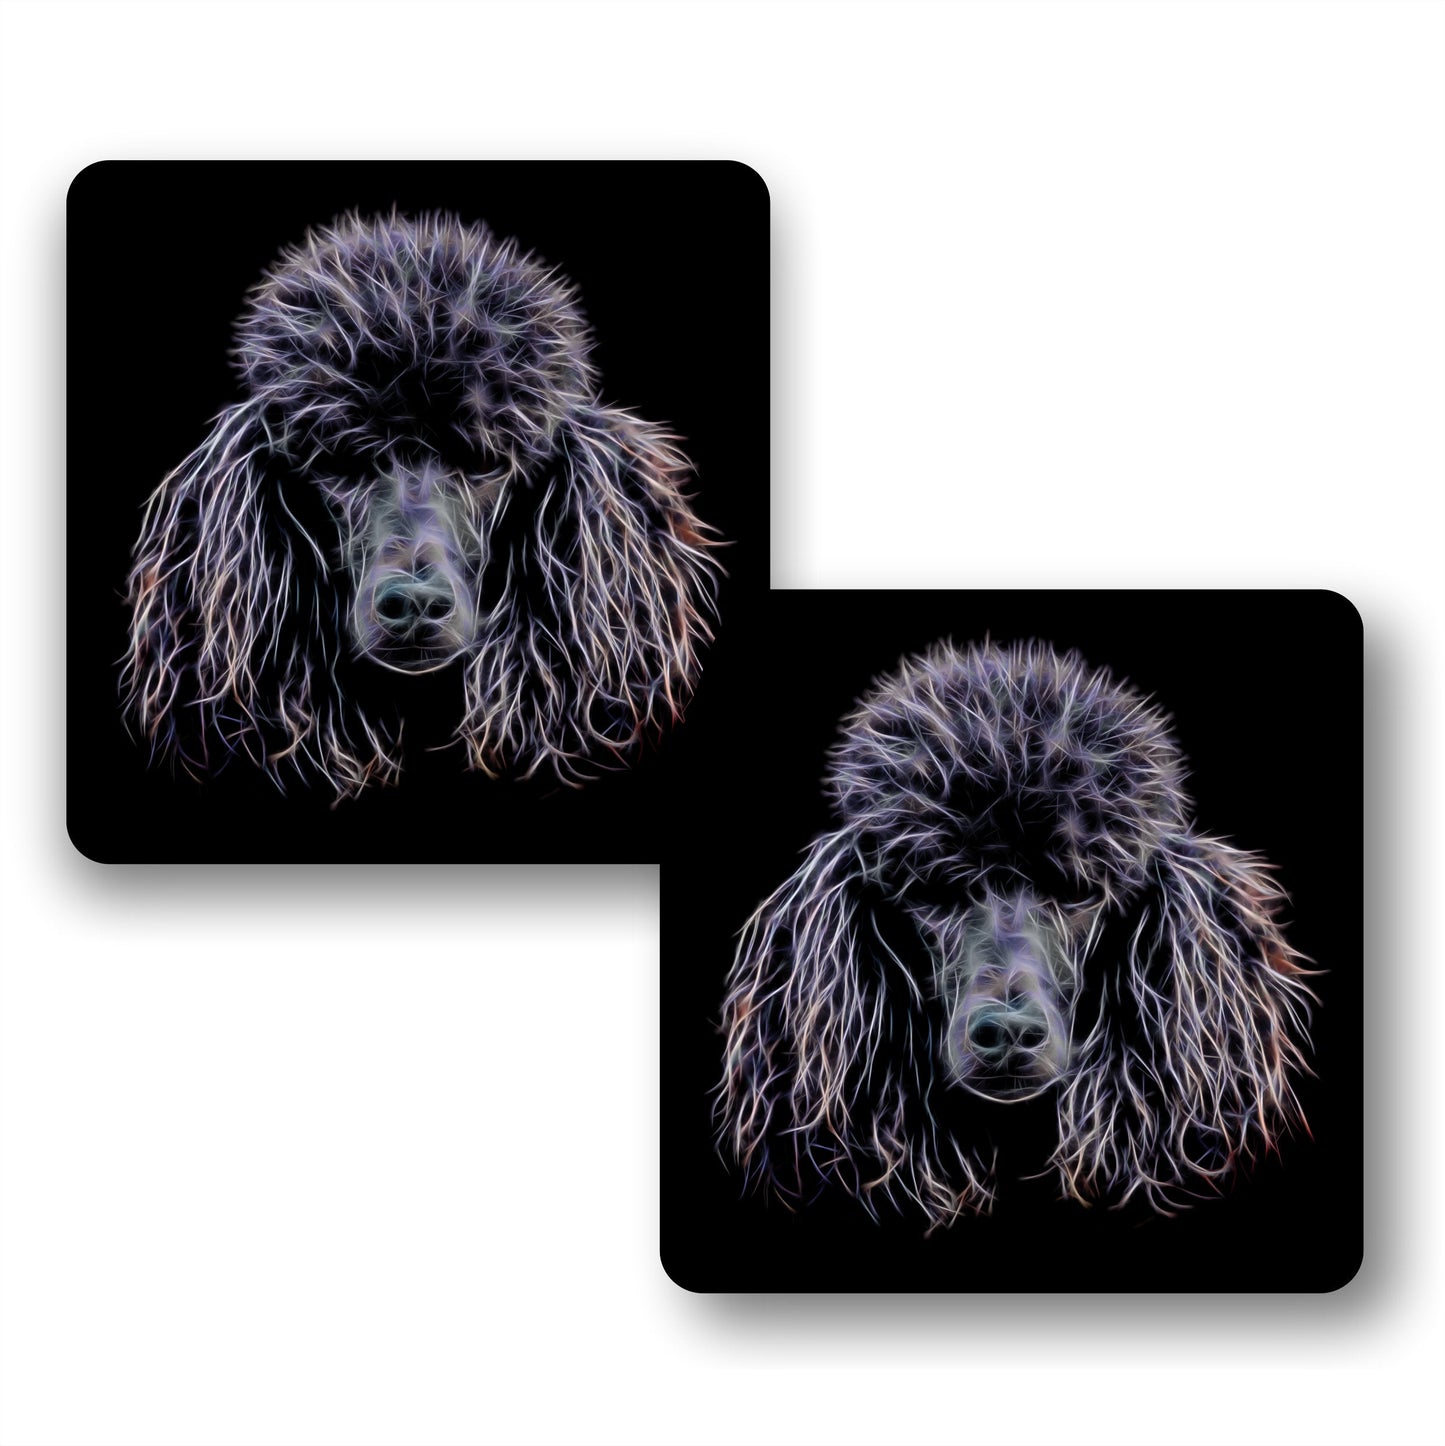 Black Standard Poodle Coasters, Set of 2, with Stunning Fractal Art Design.